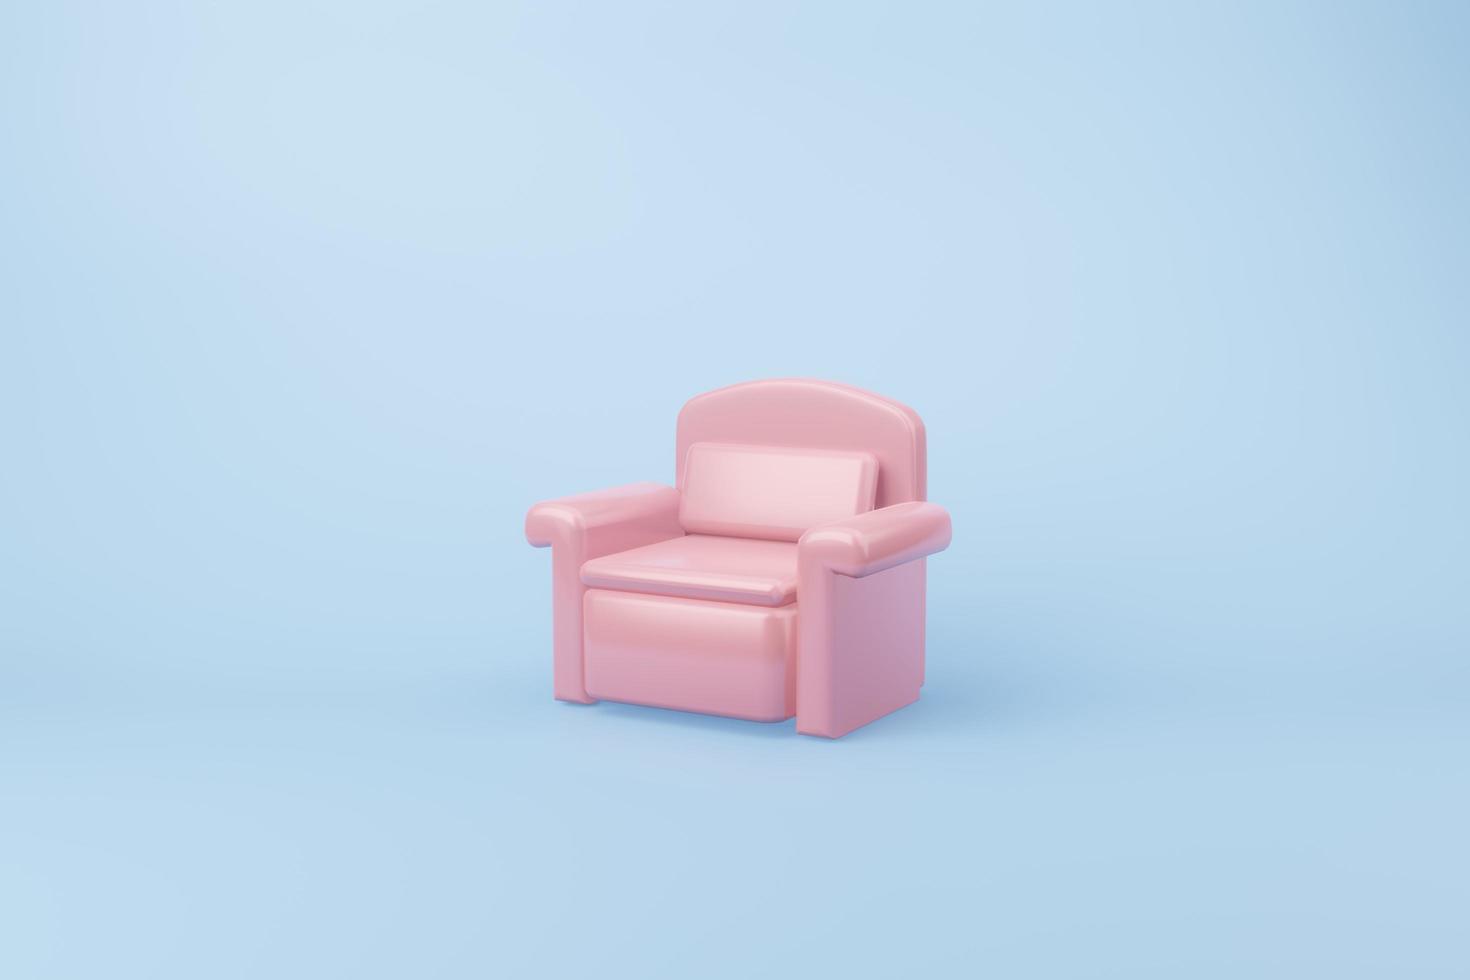 canapé fauteuil rose avec illustration 3d, canapé de luxe siège vide fond bleu clair photo